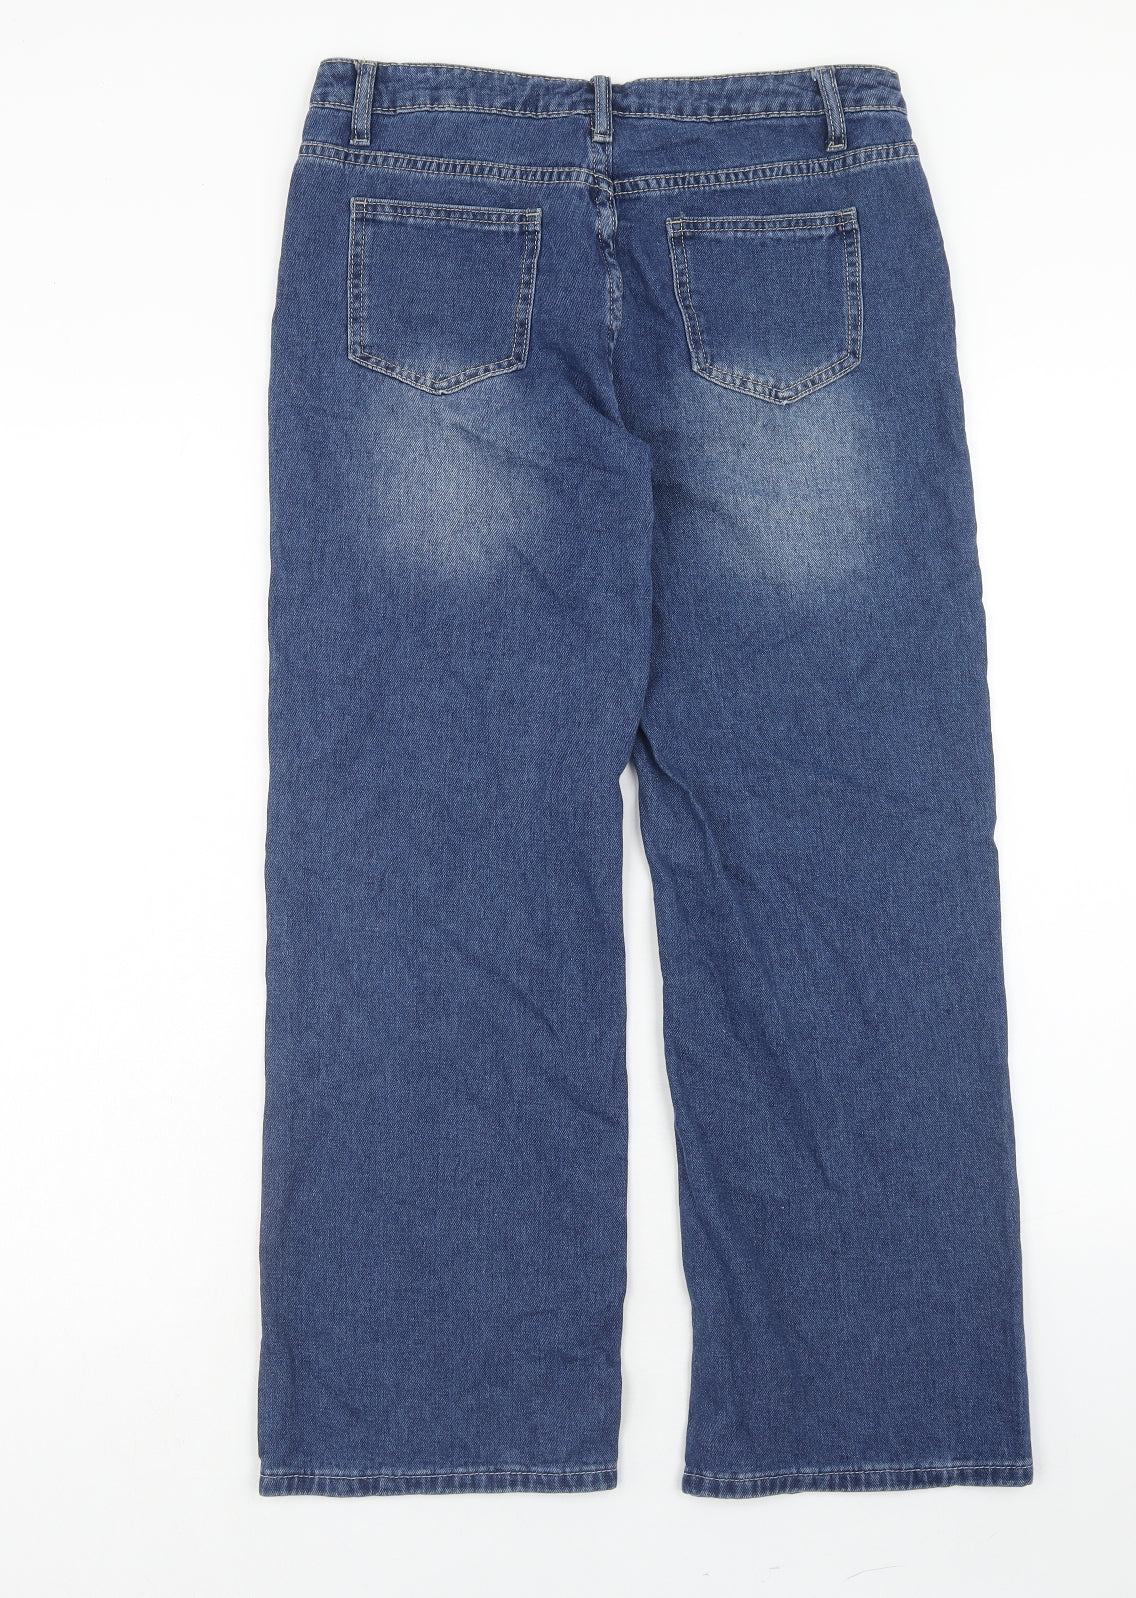 SheIn Girls Blue Cotton Straight Jeans Size 11-12 Years Regular Zip